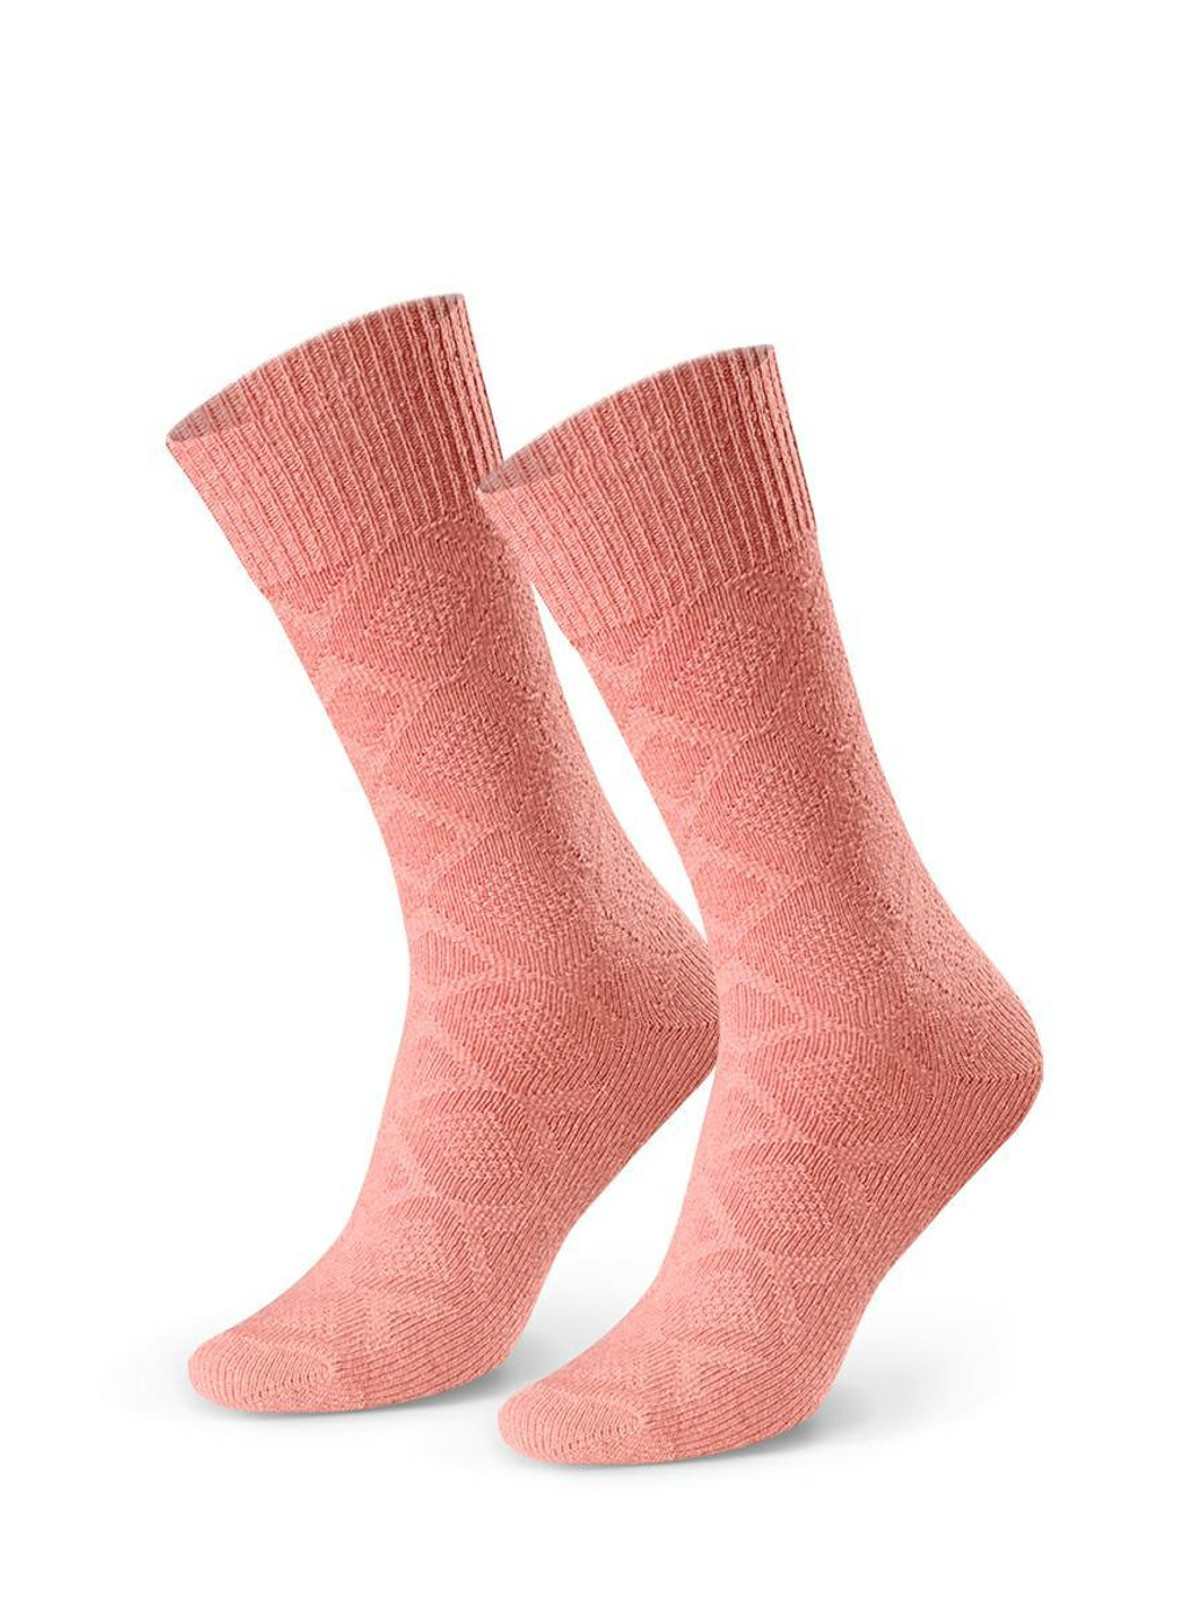 Dámské vlněné vzorované ponožky Steven art.093 35-40 světle růžová 38-40